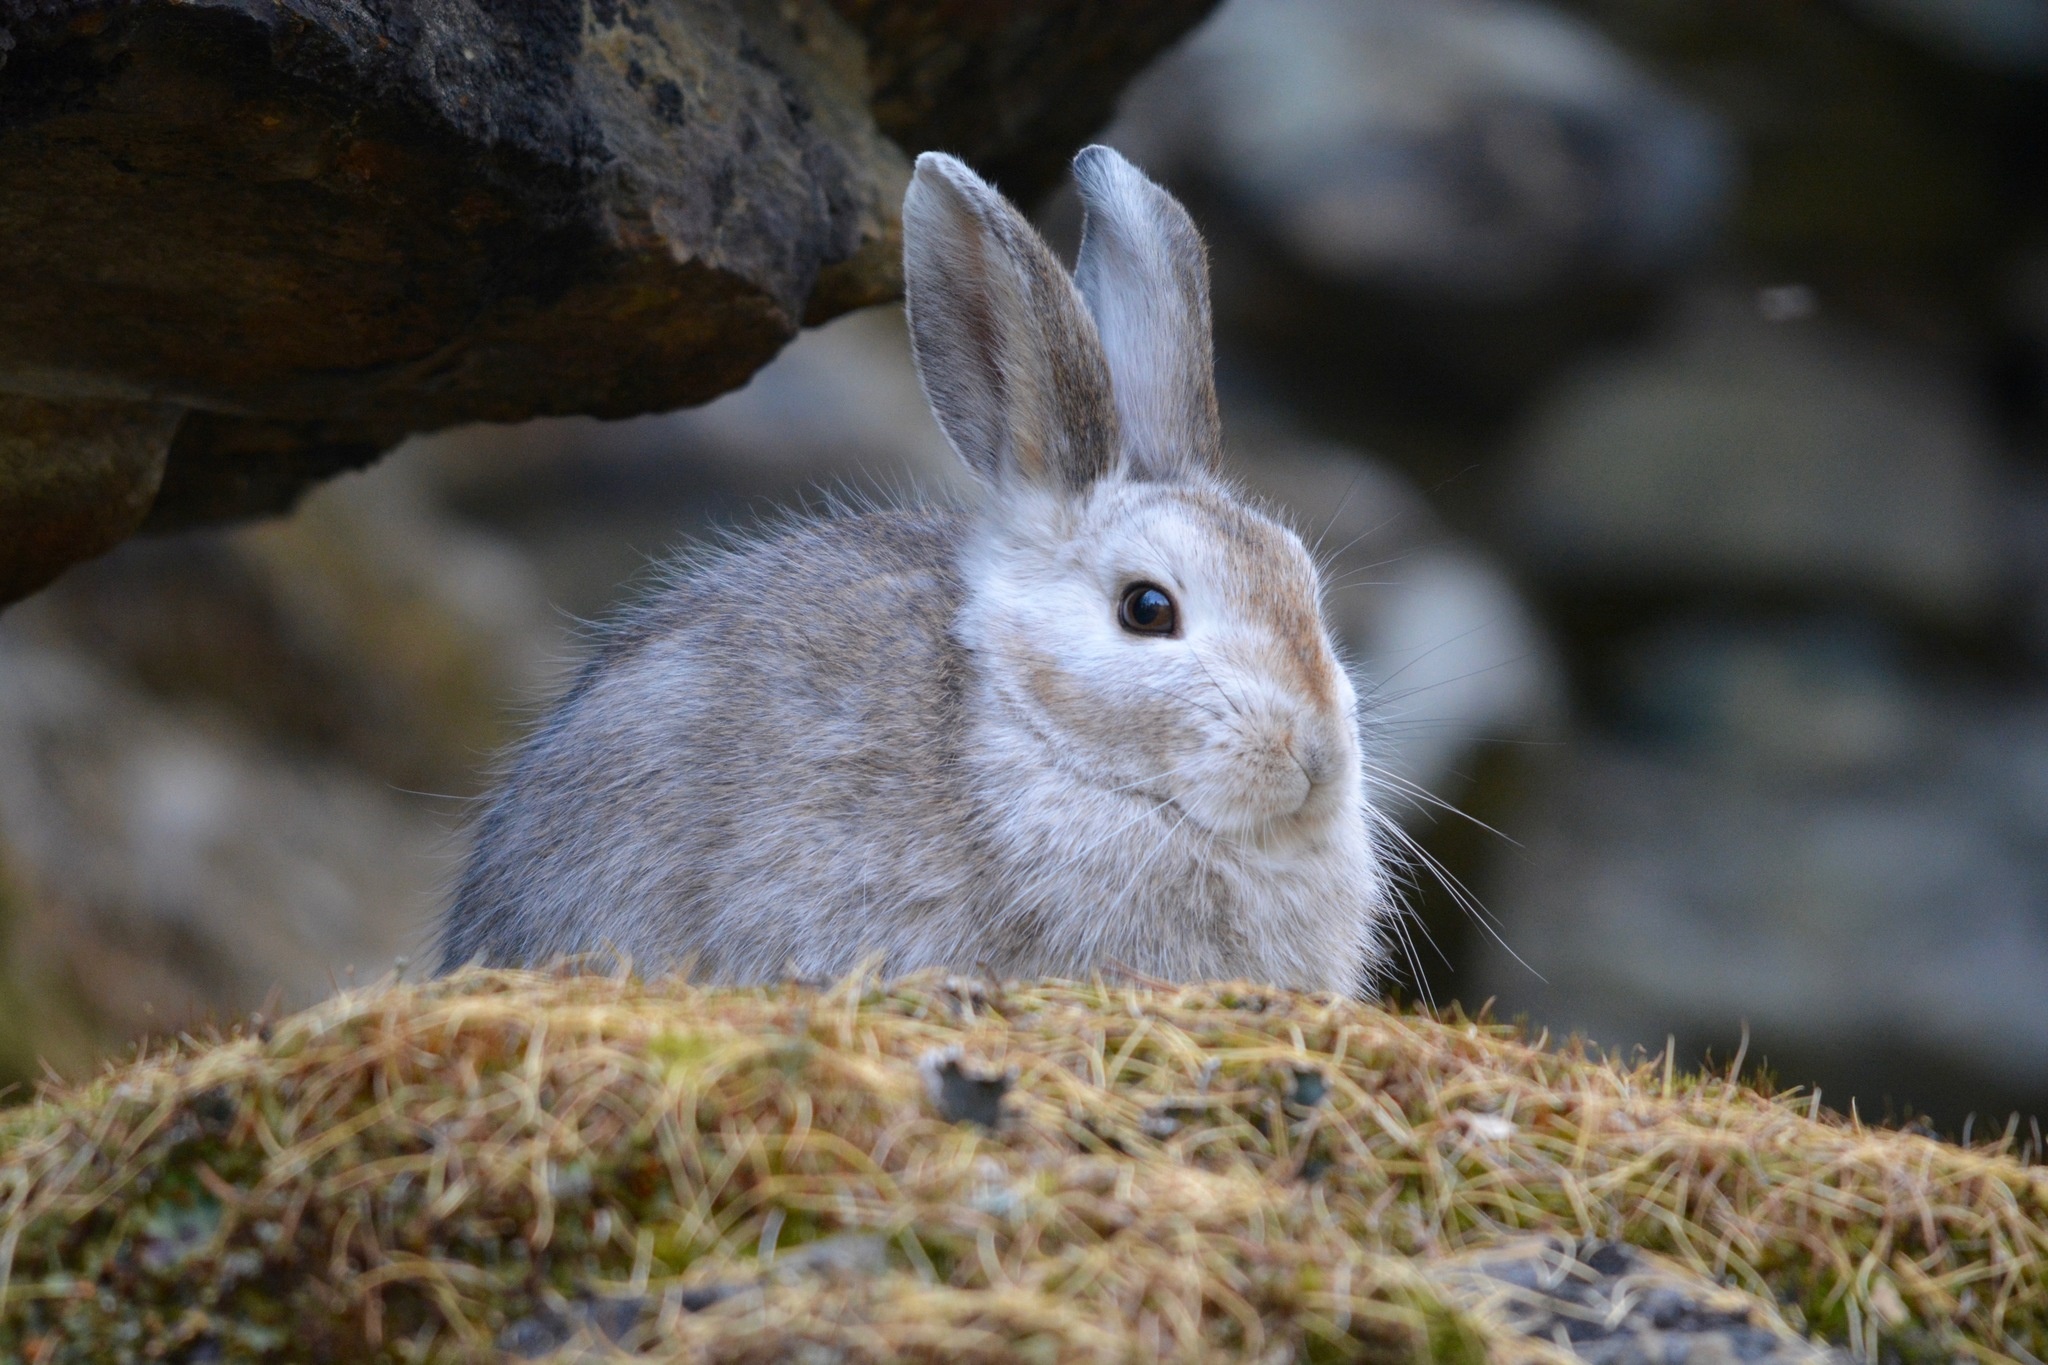 Snowshoe hare species, Lepus americanus, Wildlife observation, Naturalist's delight, 2050x1370 HD Desktop